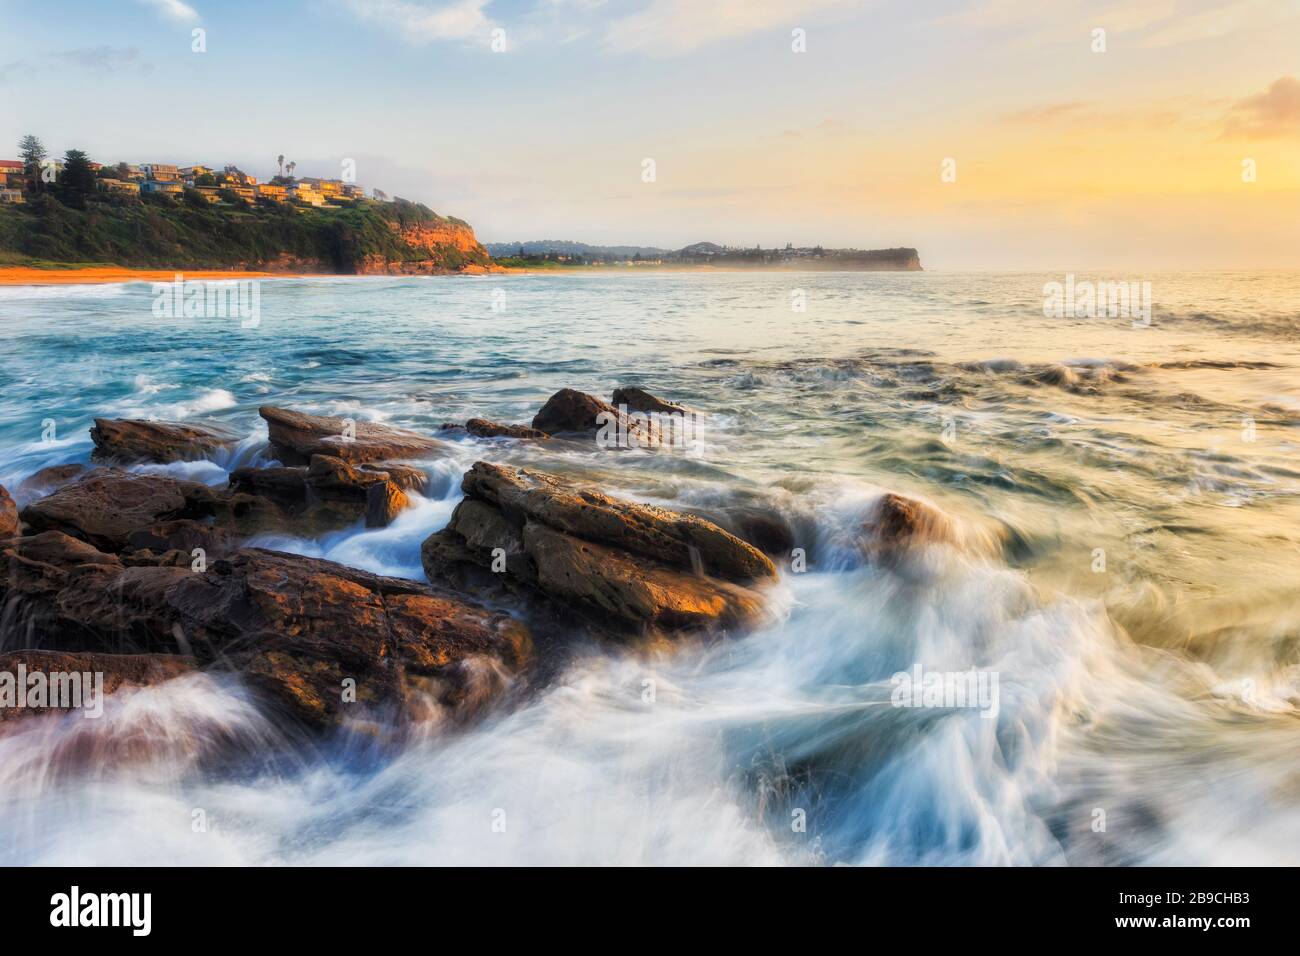 La grande clé des vagues rapides qui s'écoulent sur les roches de grès à la plage de Warriewood à Sydney au lever du soleil. Banque D'Images